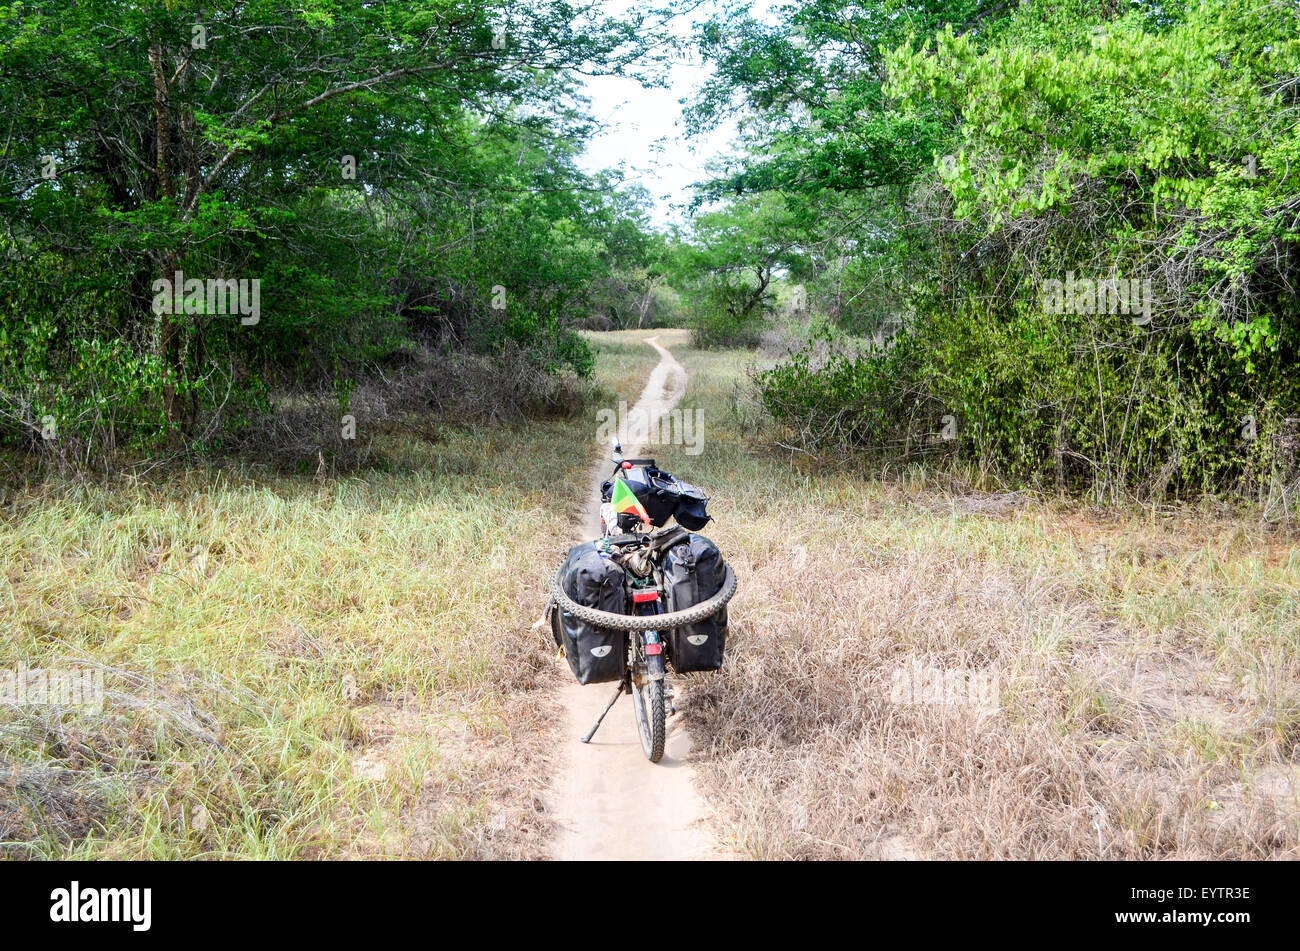 Abenteuer und Fahrradtouren auf den unbefestigten Straßen von Angola Stockfoto